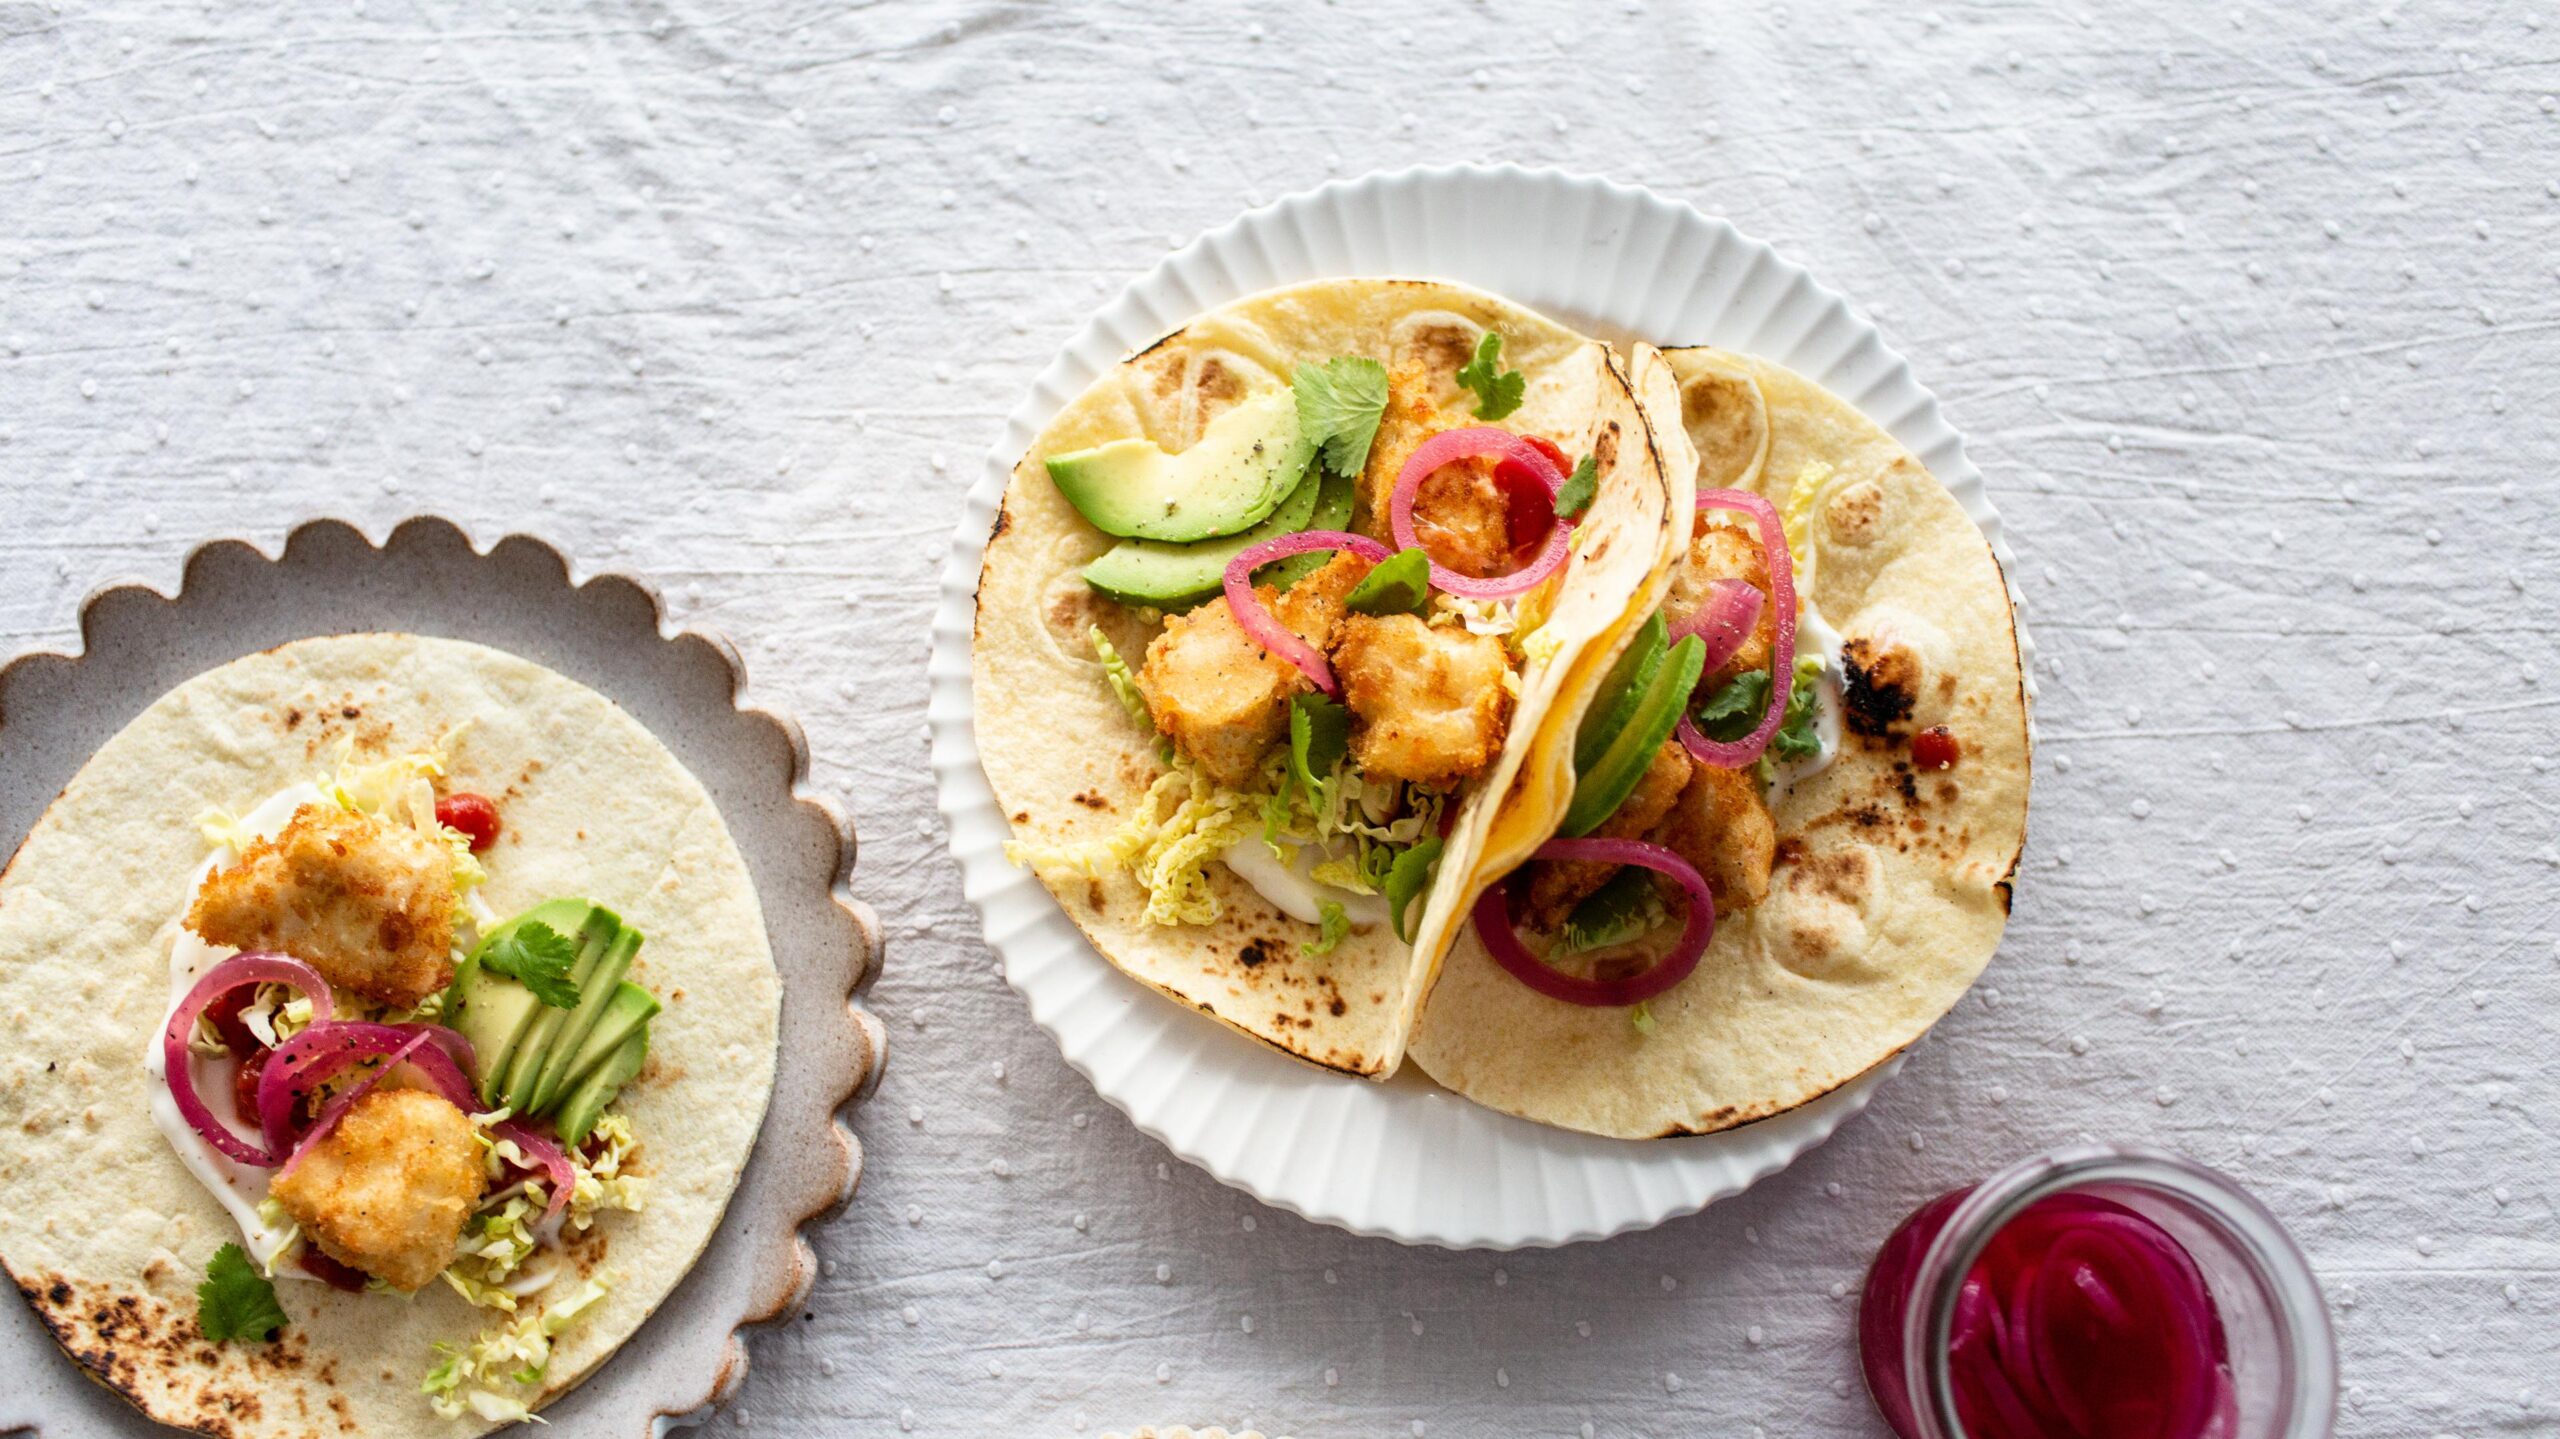 Delicious Vegan Fried ‘Fish’ Tacos Recipe